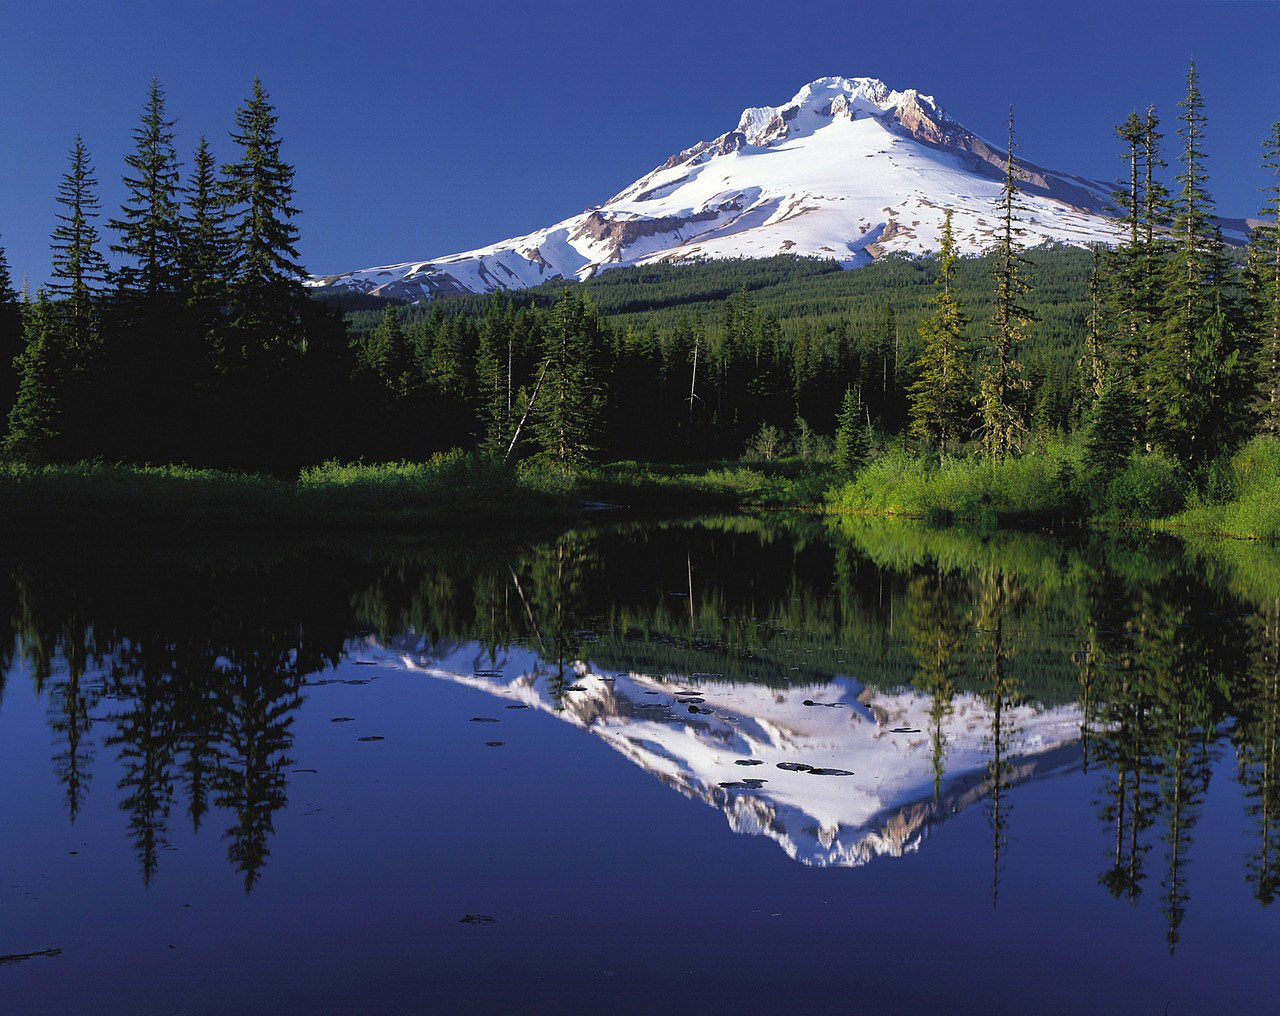 Fotografija prikazuje planinu i njezin odraz u jezeru.